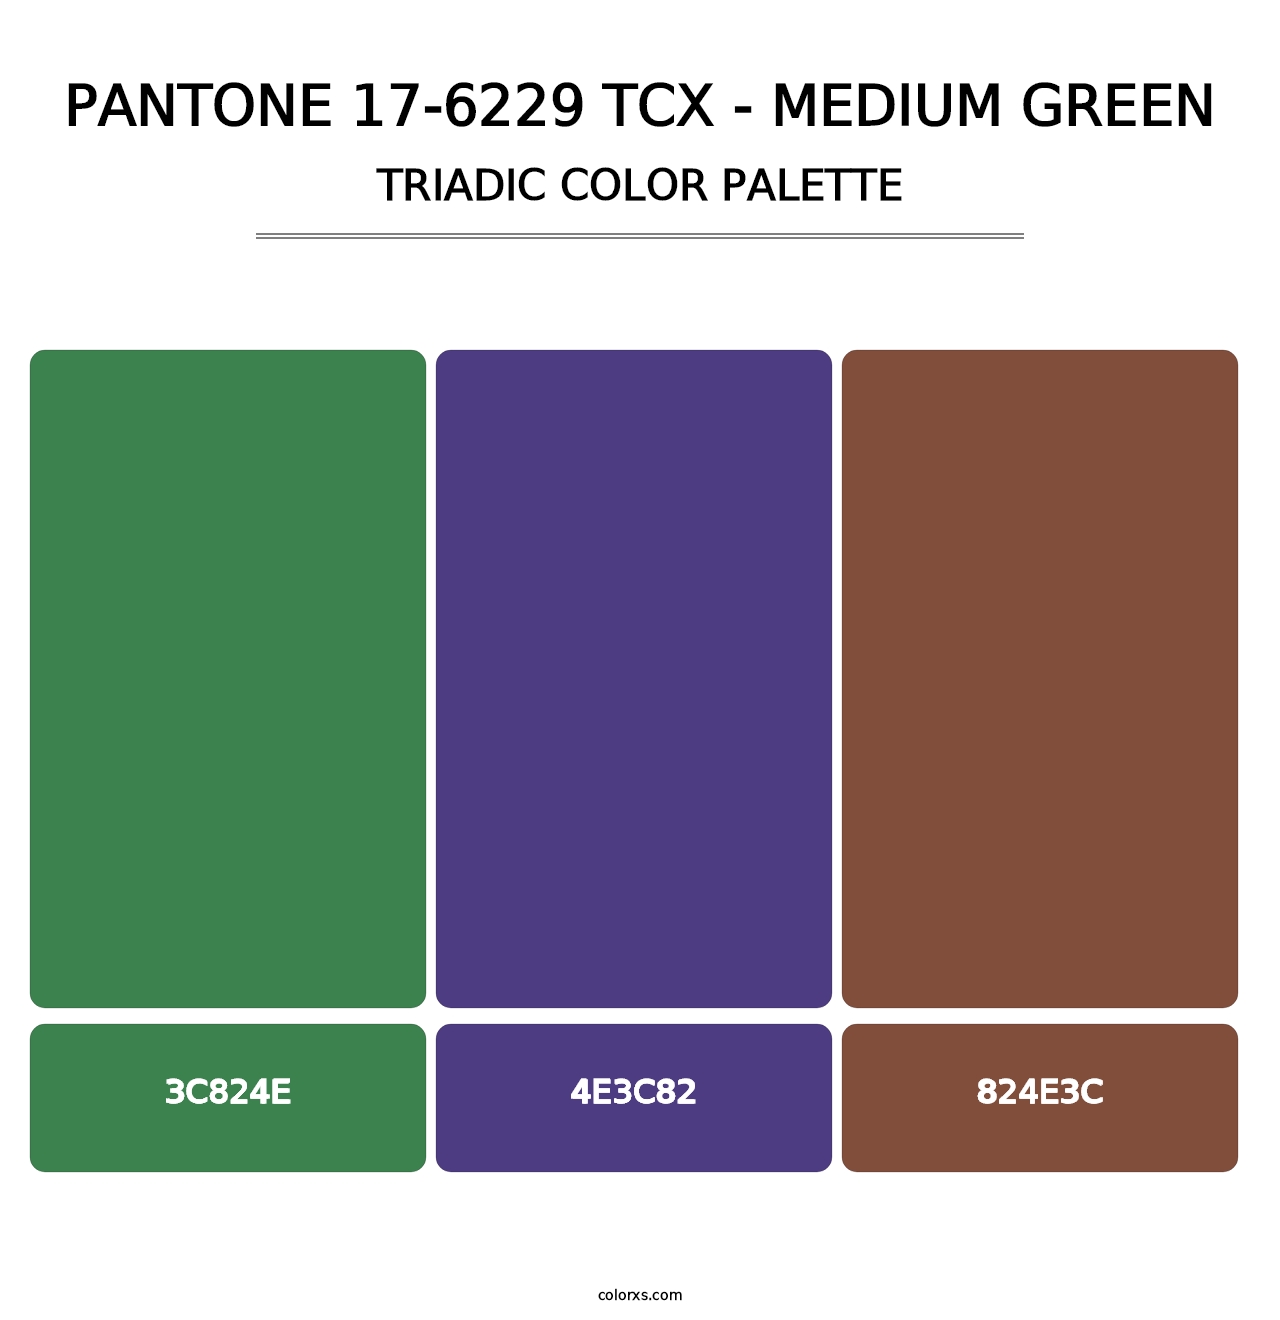 PANTONE 17-6229 TCX - Medium Green - Triadic Color Palette